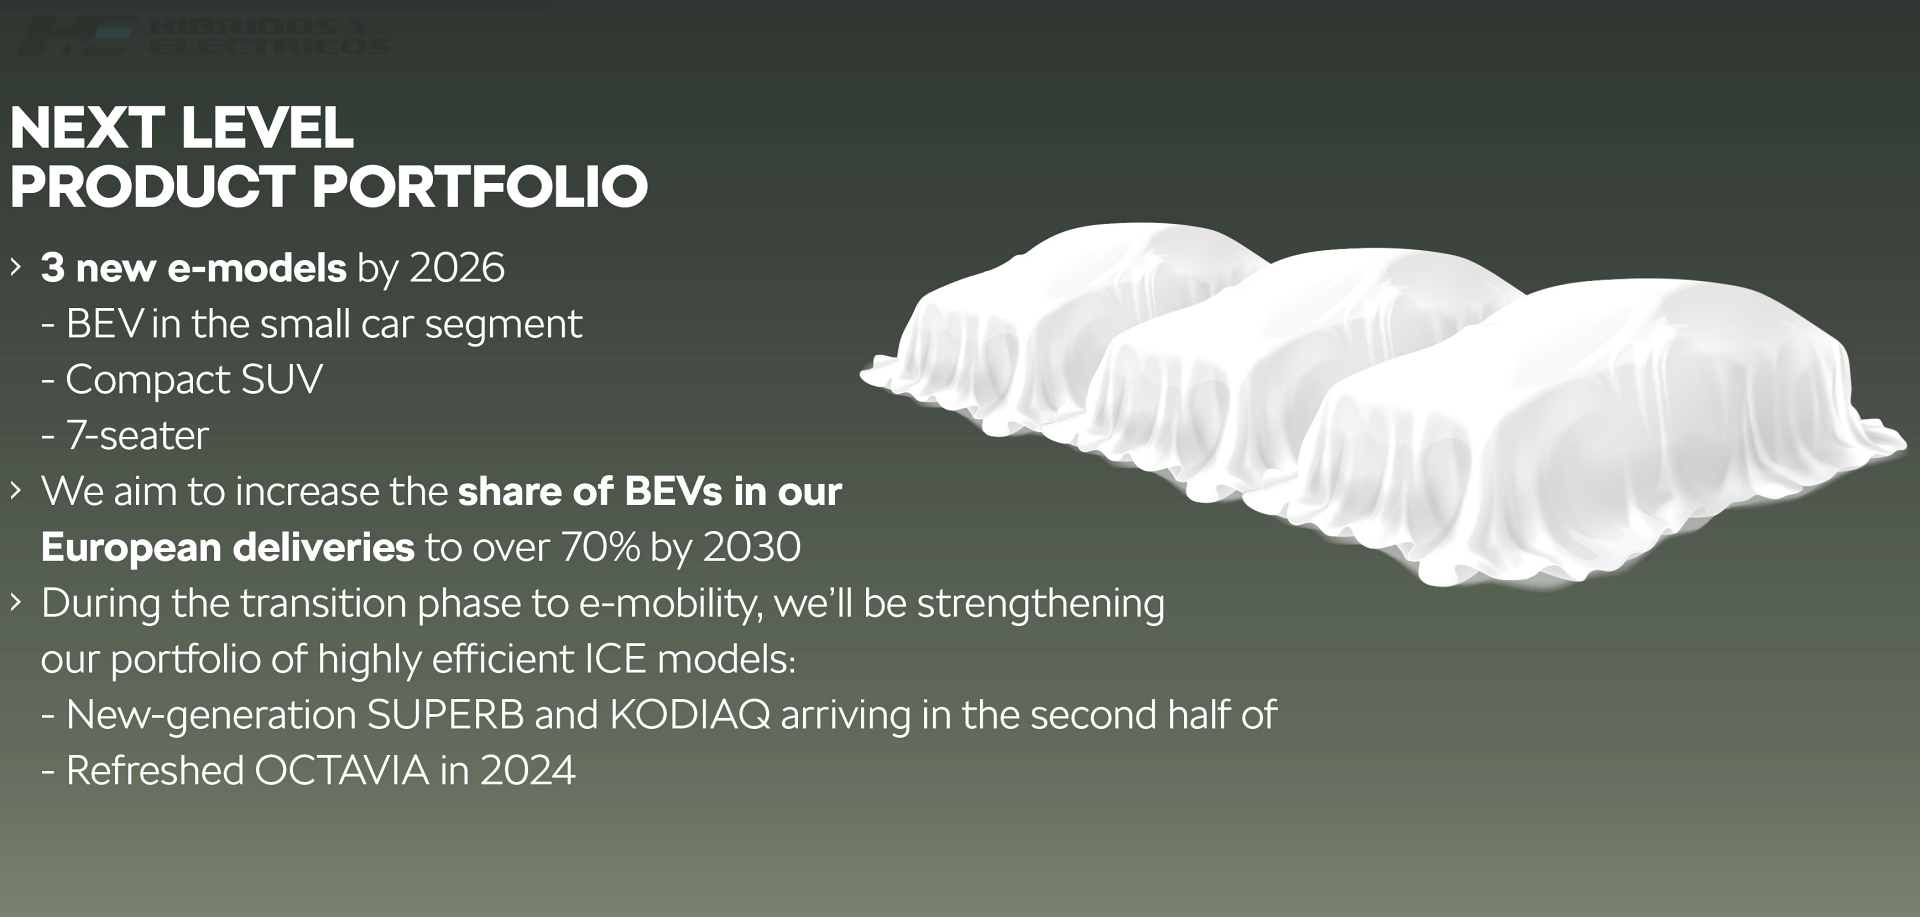 Infografía de Skoda sobre sus próximos modelos, entre los que se incluyen tres coches eléctricos.